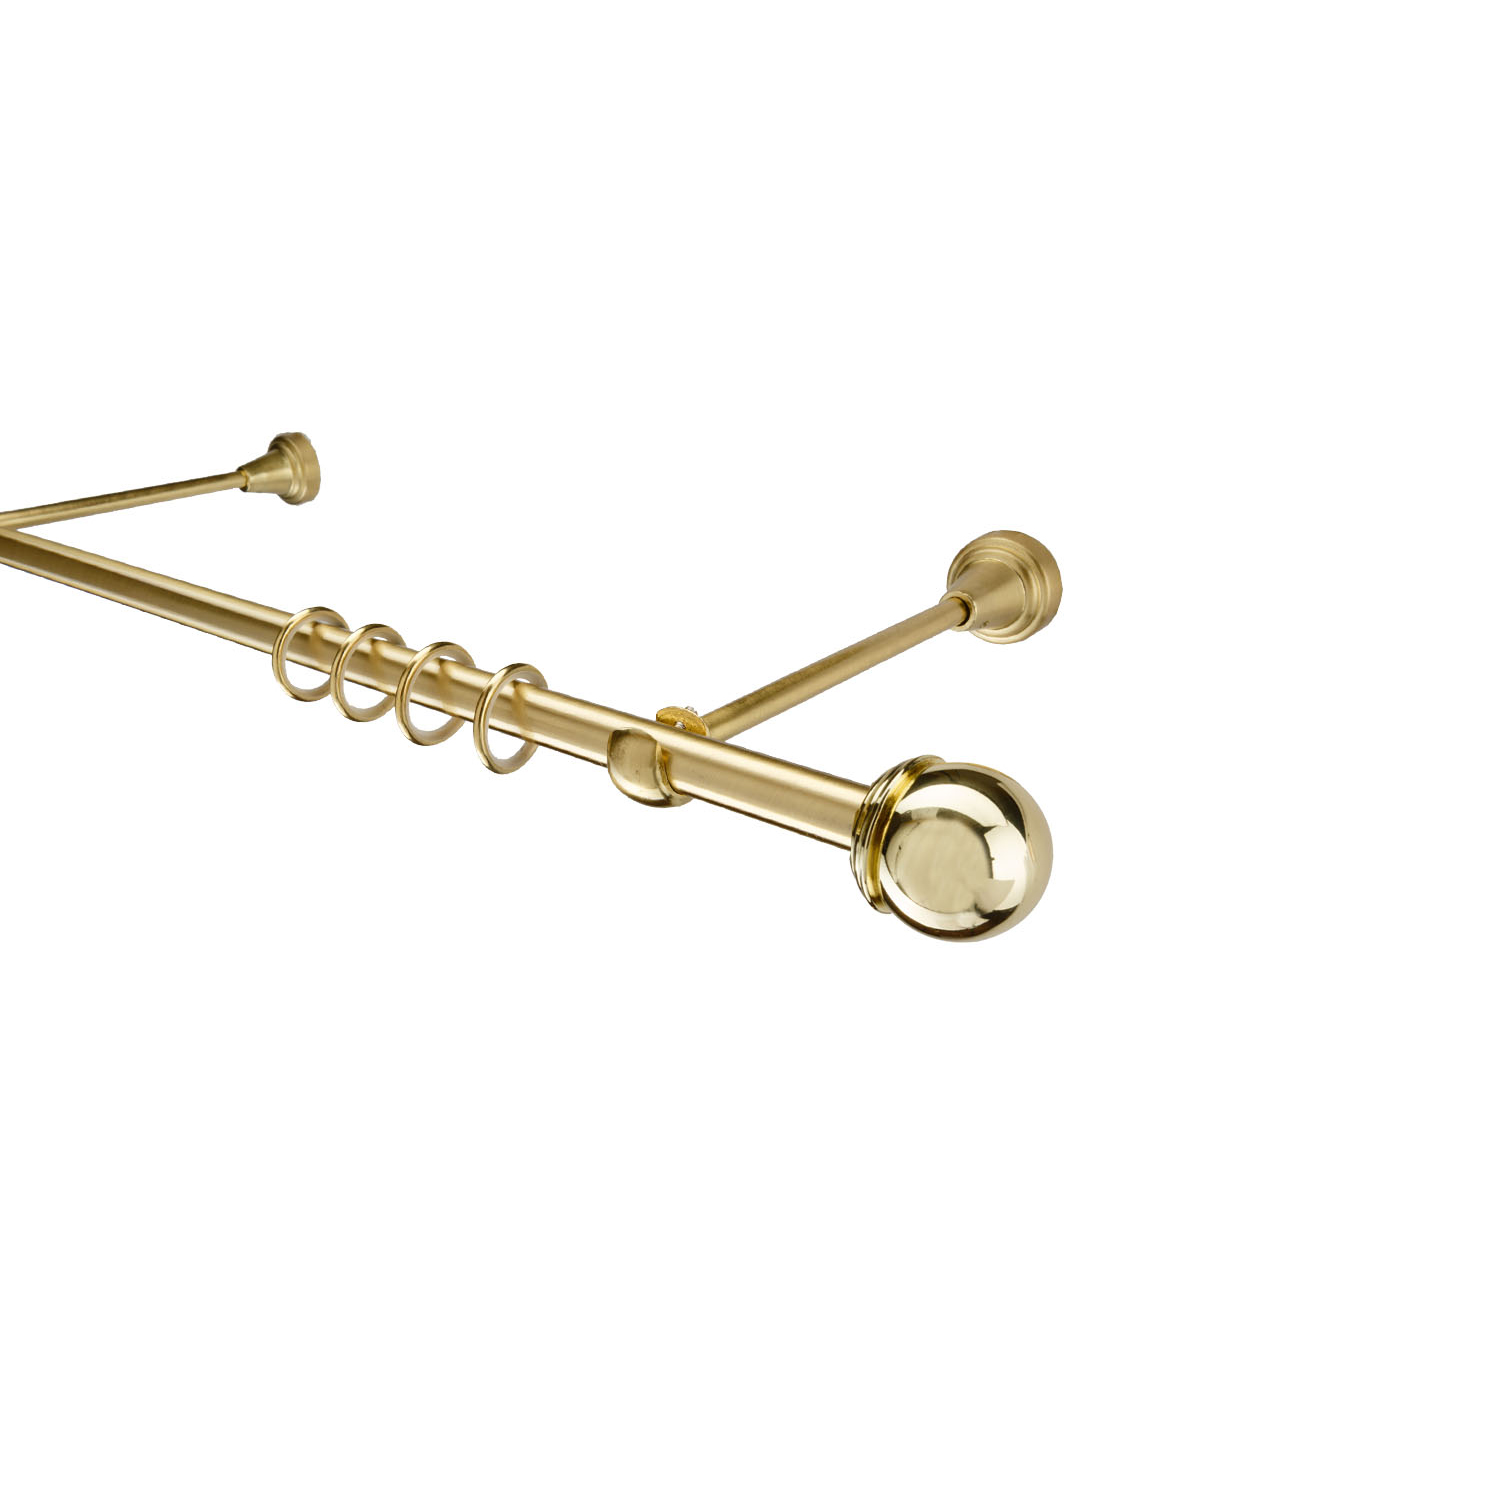 Металлический карниз для штор Вива, однорядный 16 мм, золото, гладкая штанга, длина 300 см - фото Wikidecor.ru